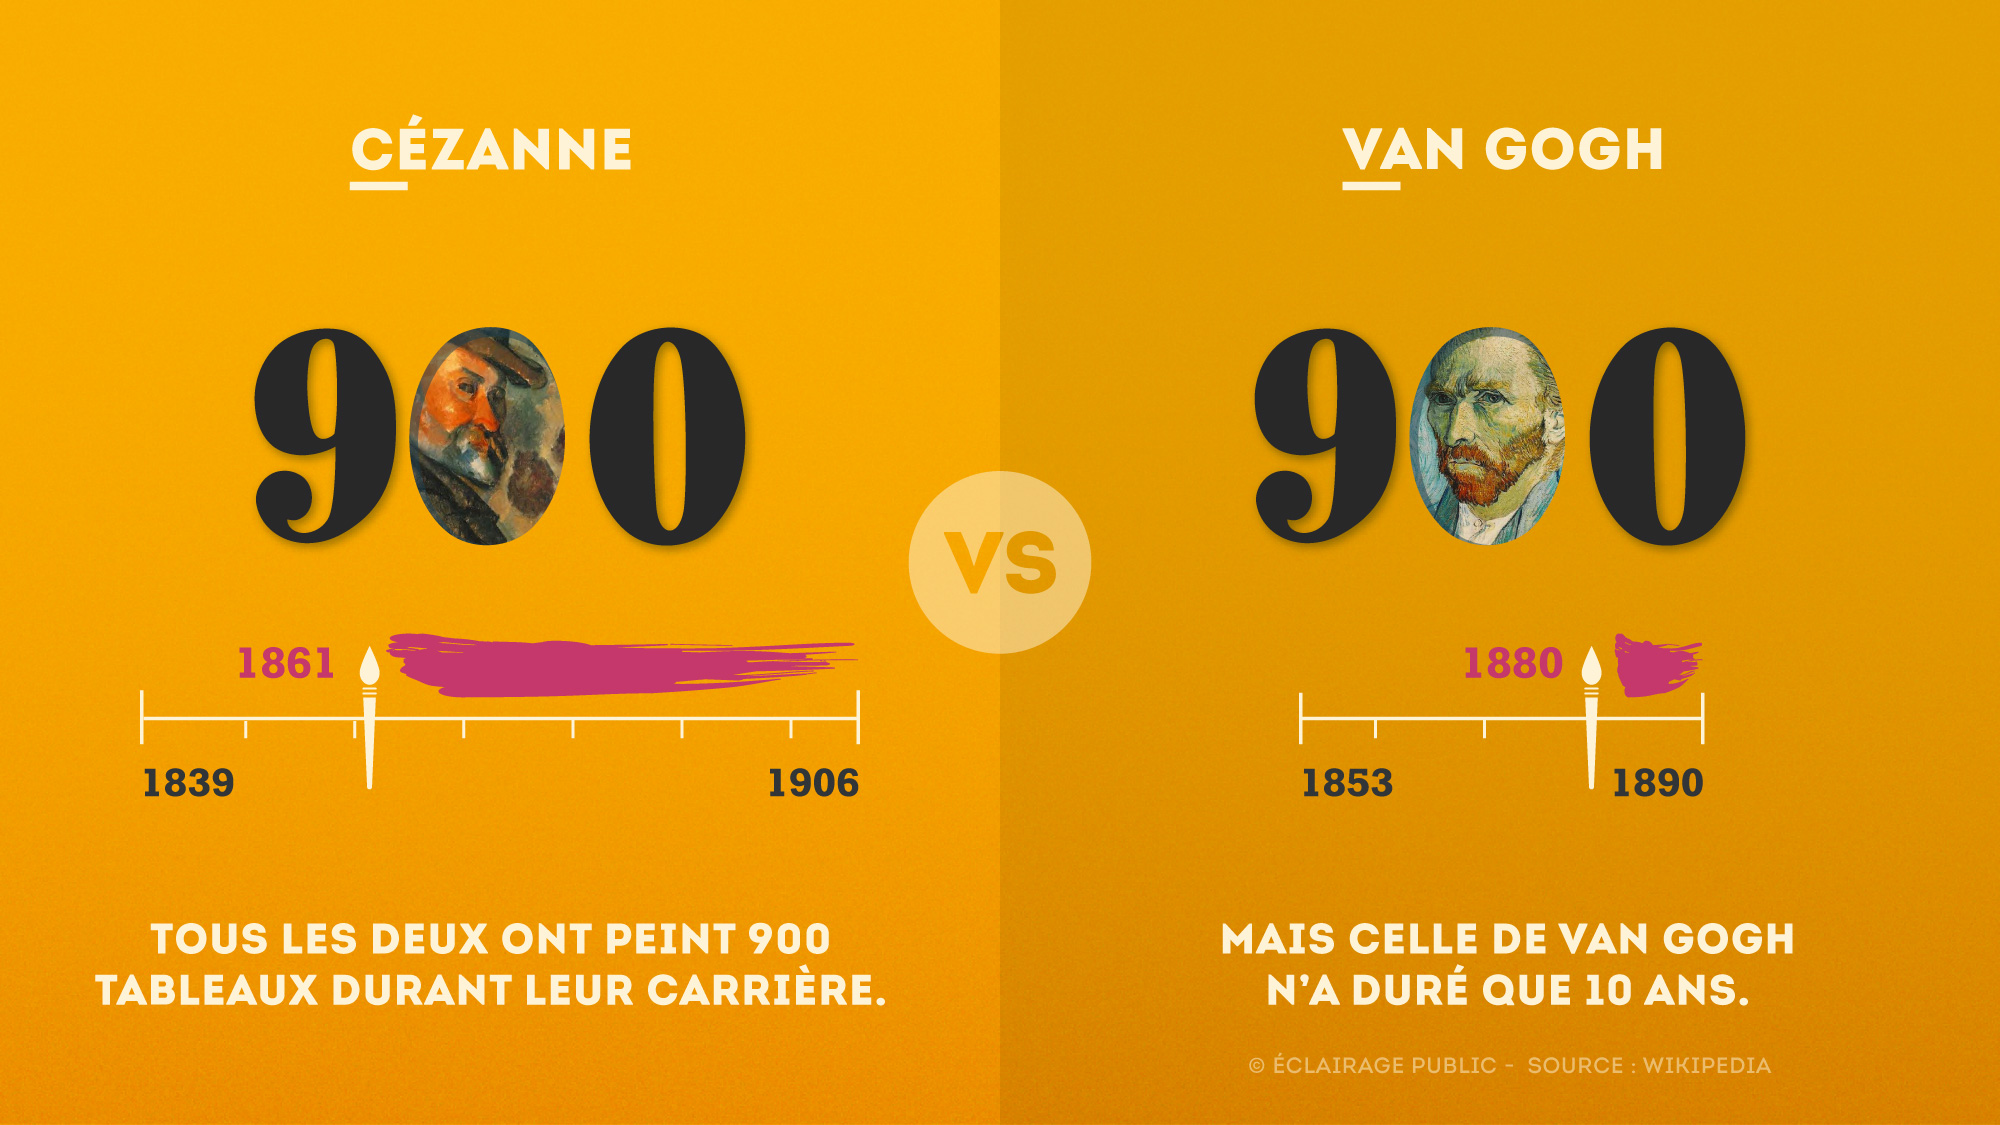 Cezanne-VS-Van-Gogh-Tableaux-Infographie-ECLAIRAGE-PUBLIC-2000